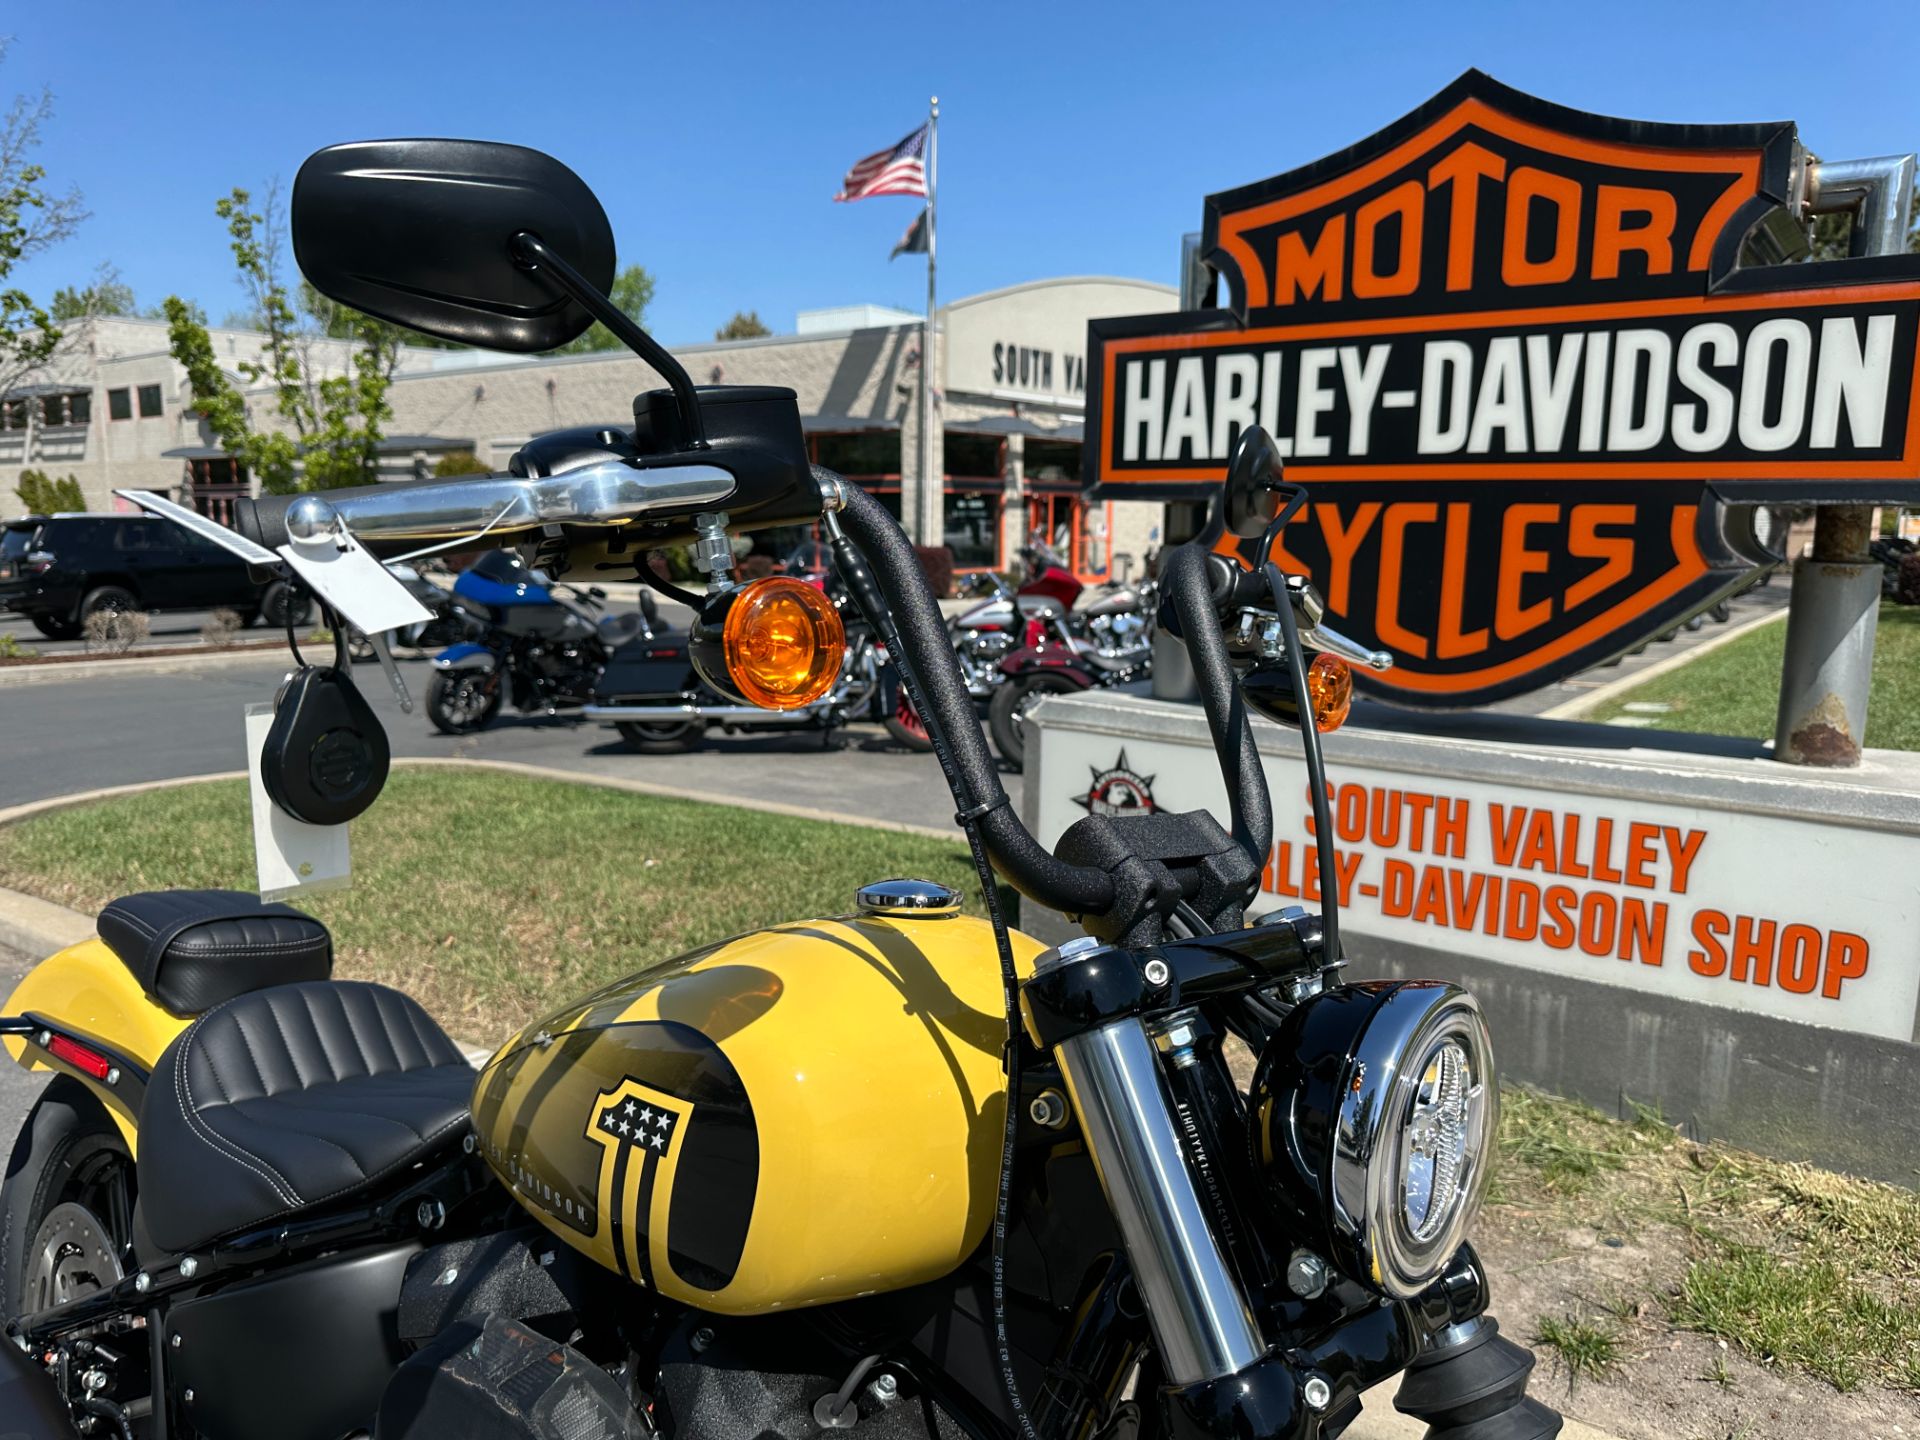 2023 Harley-Davidson Street Bob® 114 in Sandy, Utah - Photo 4